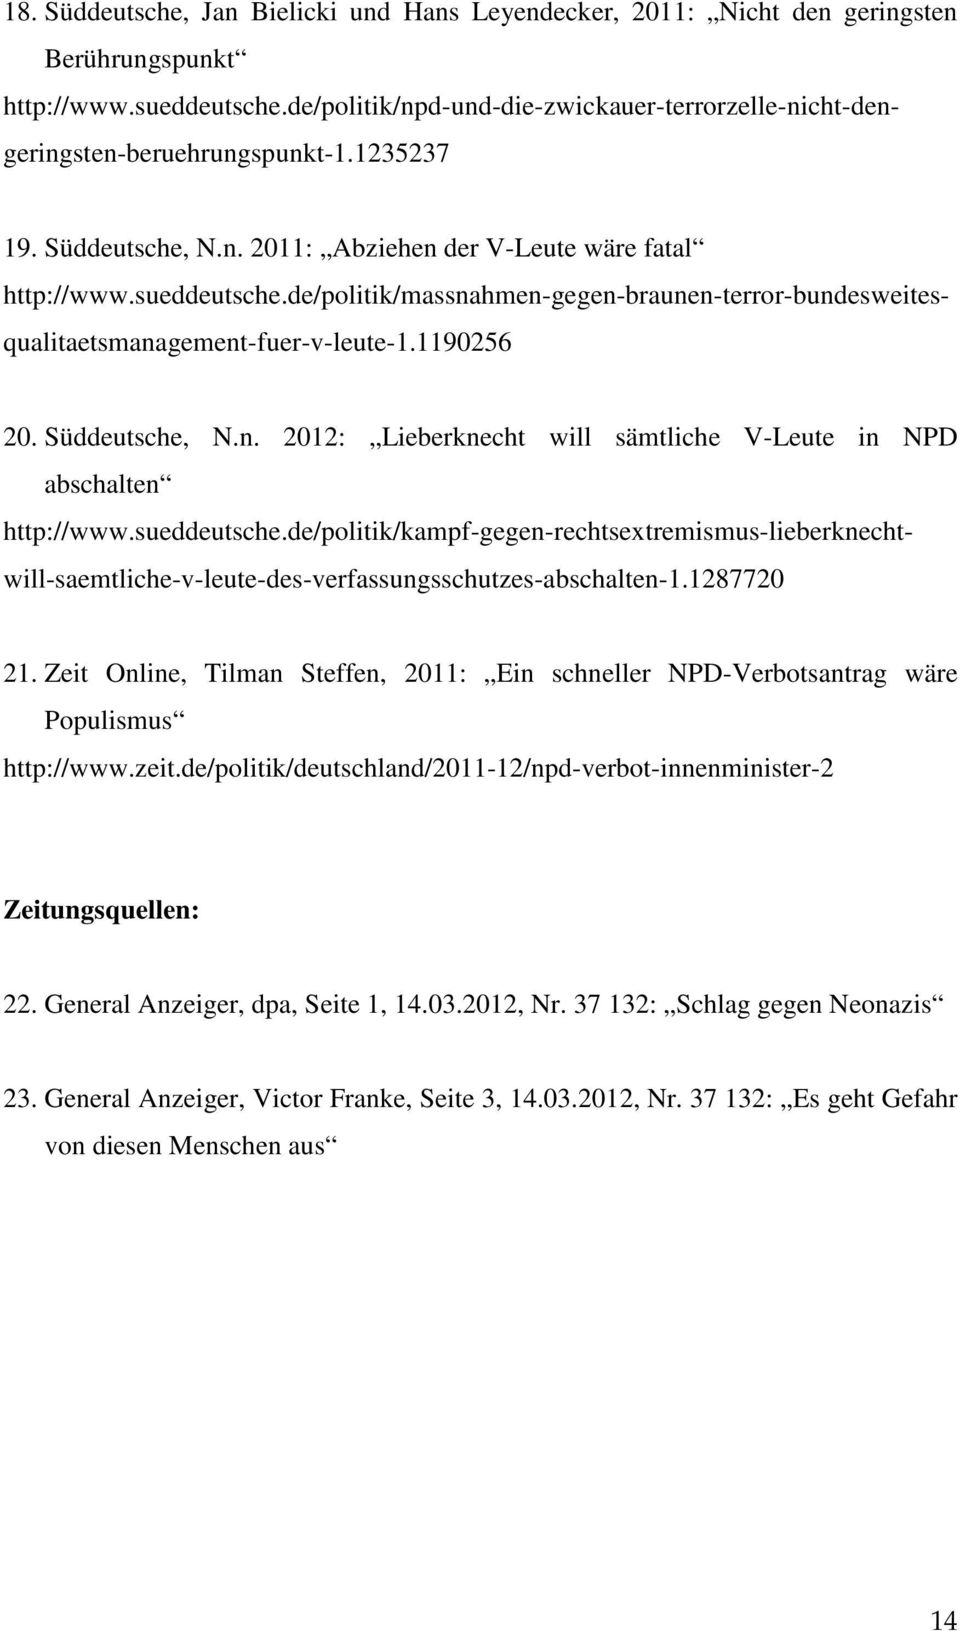 de/politik/massnahmen-gegen-braunen-terror-bundesweitesqualitaetsmanagement-fuer-v-leute-1.1190256 20. Süddeutsche, N.n. 2012: Lieberknecht will sämtliche V-Leute in NPD abschalten http://www.